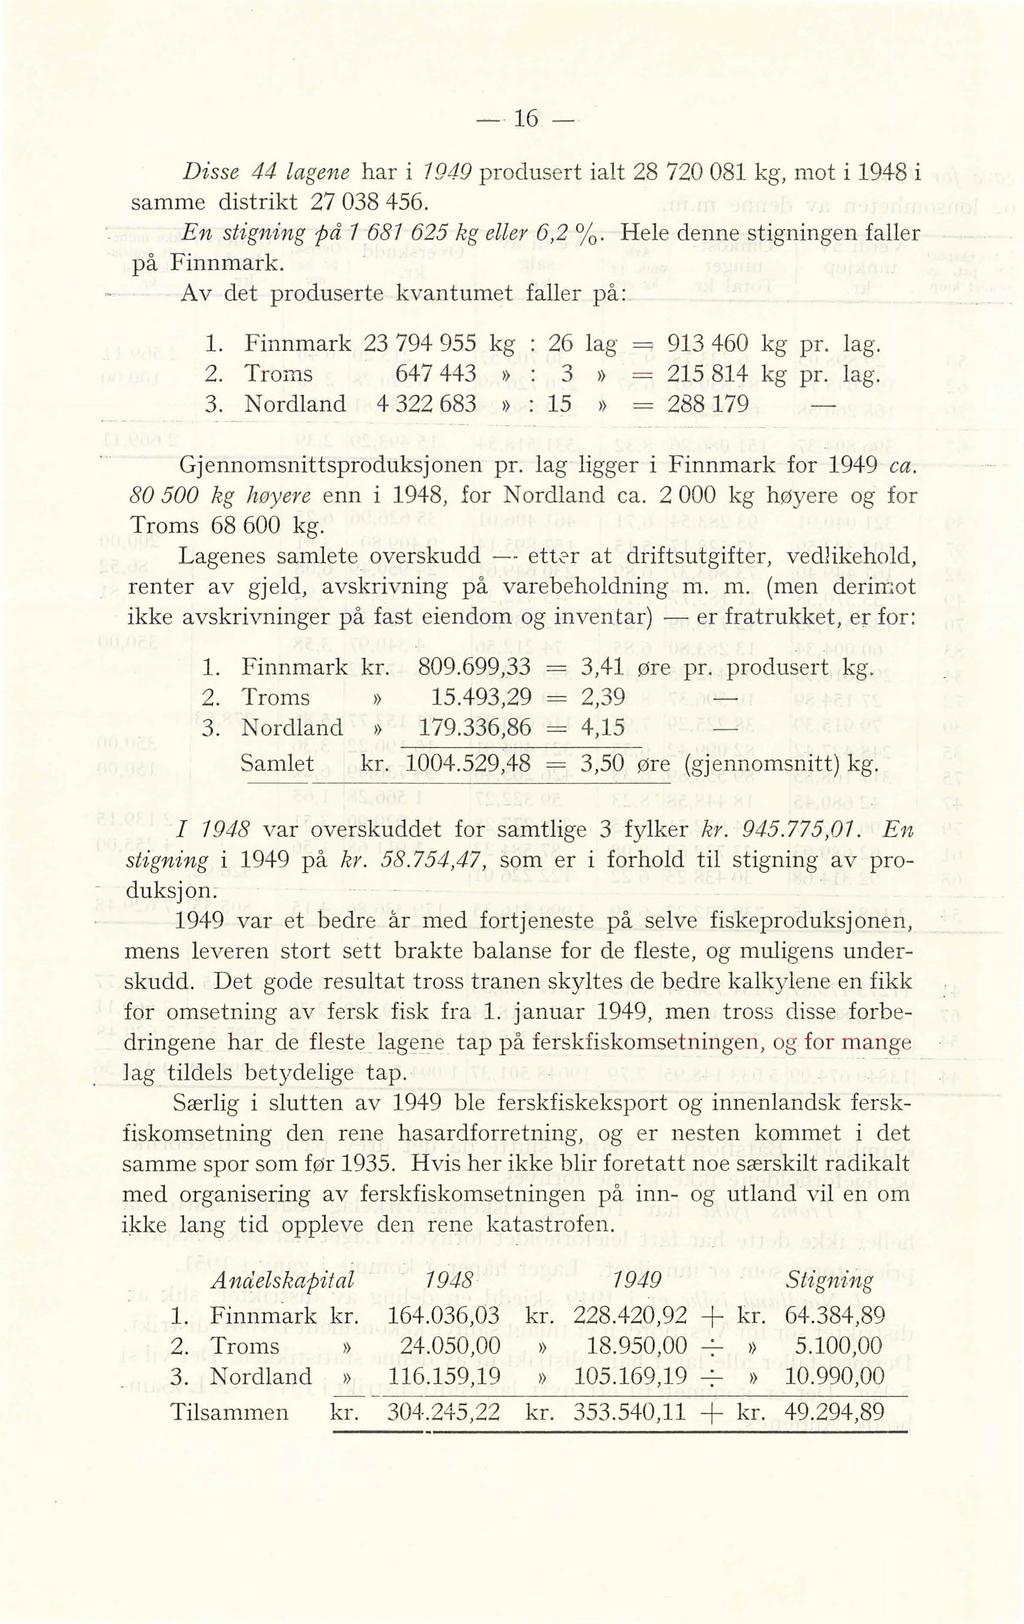 - 16- Disse 44 lagene har i 1949 produsert ialt 28 720 081 kg, mot i 1948 i samme distrikt 27 038 456. En stigning på 1 681 625 kg eller 6,2 /o. Hele denne stigningen faller på Finnmark.